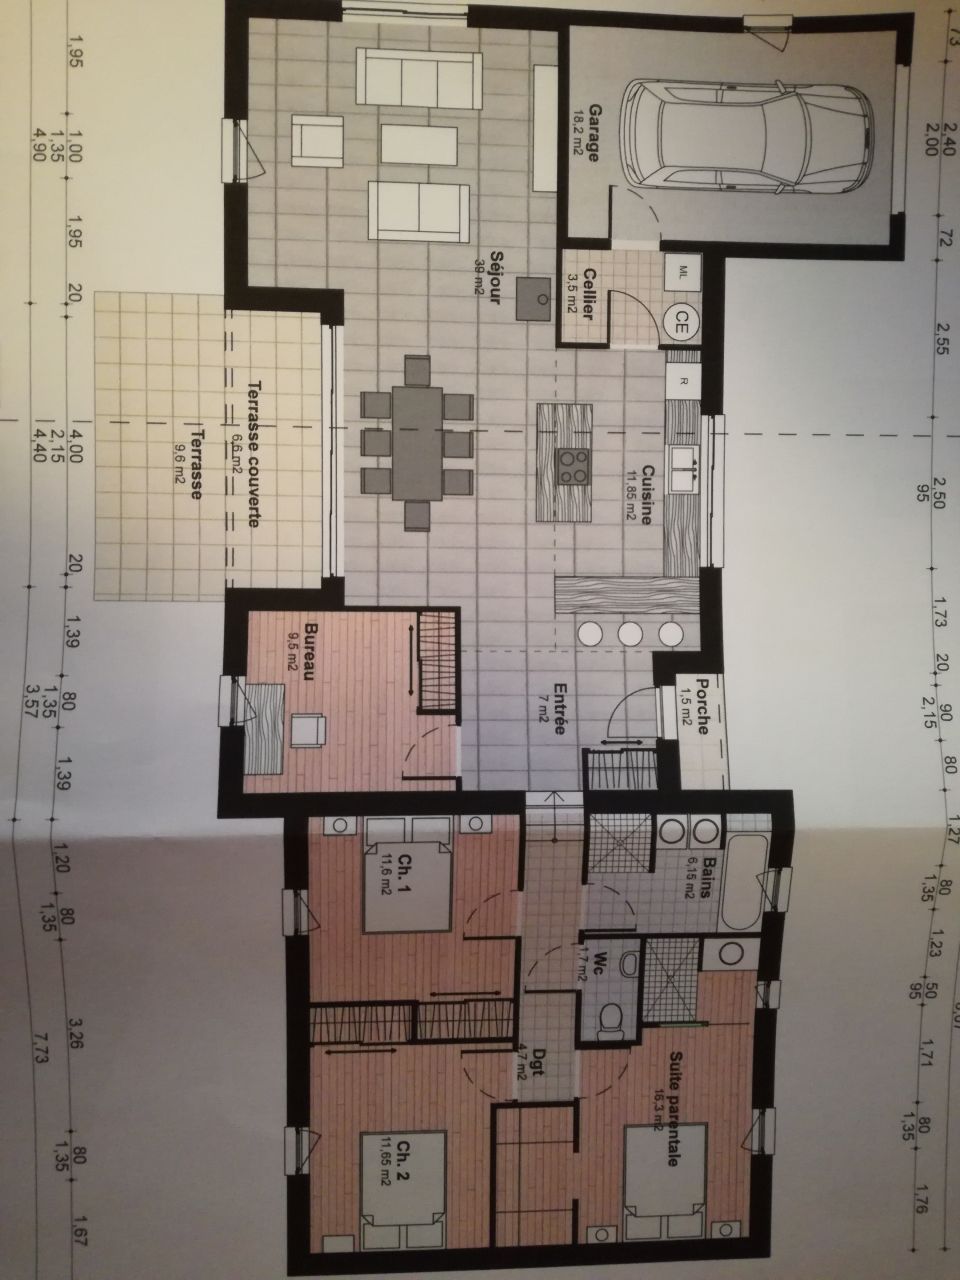 Plan de maison version 1